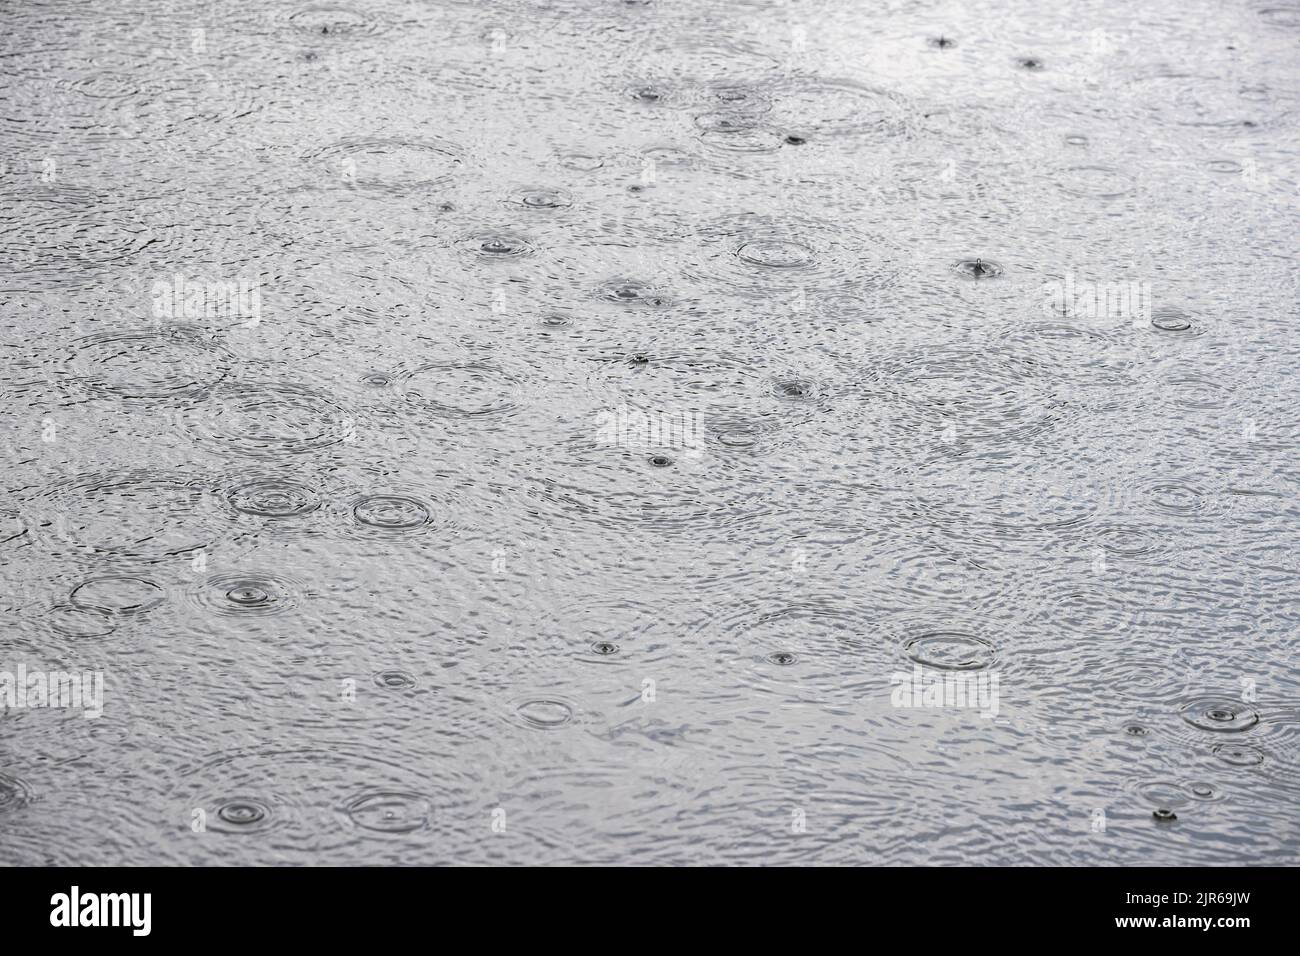 Primer plano de las gotas de lluvia que atentan un cuerpo de agua. Foto de stock